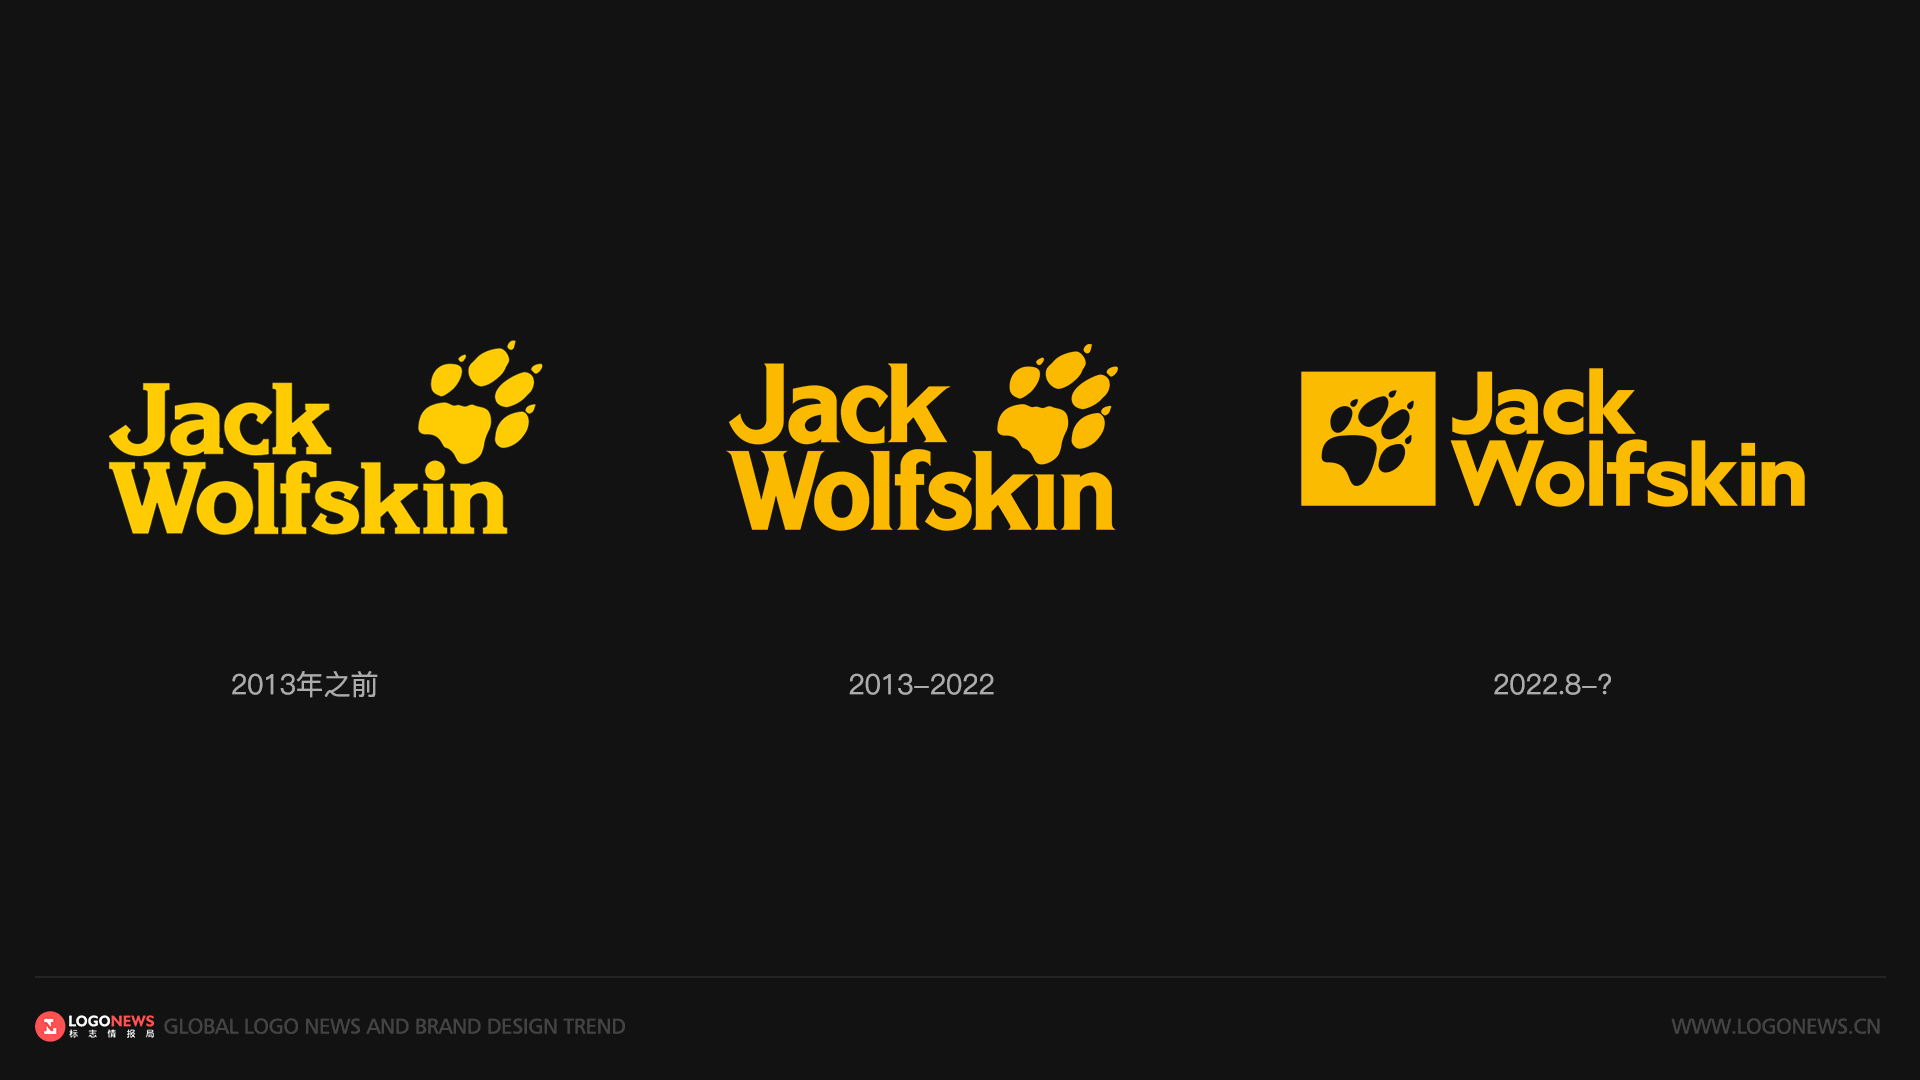 德國知名戶外品牌Jack Wolfskin（狼爪）啟用新LOGO 4